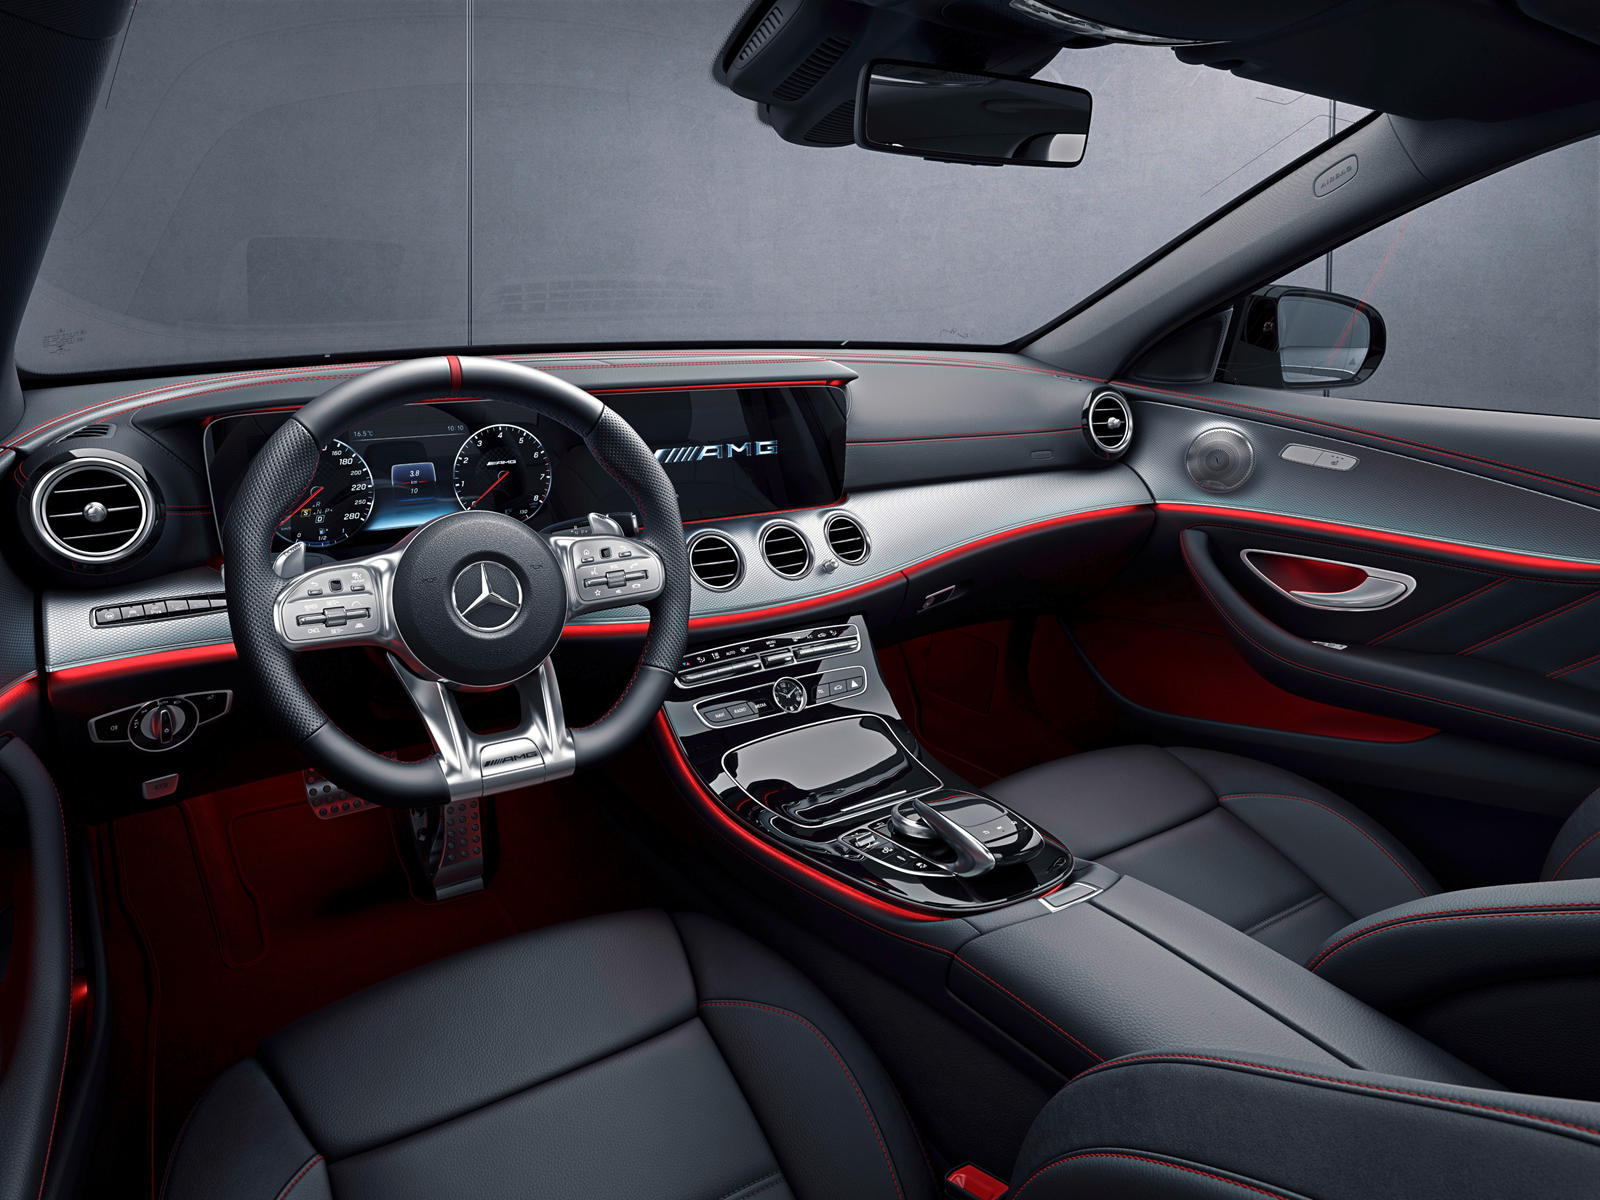 2020 Mercedes-AMG E53 Sedan Interior Dimensions: Seating, Cargo Space &  Trunk Size - Photos | CarBuzz